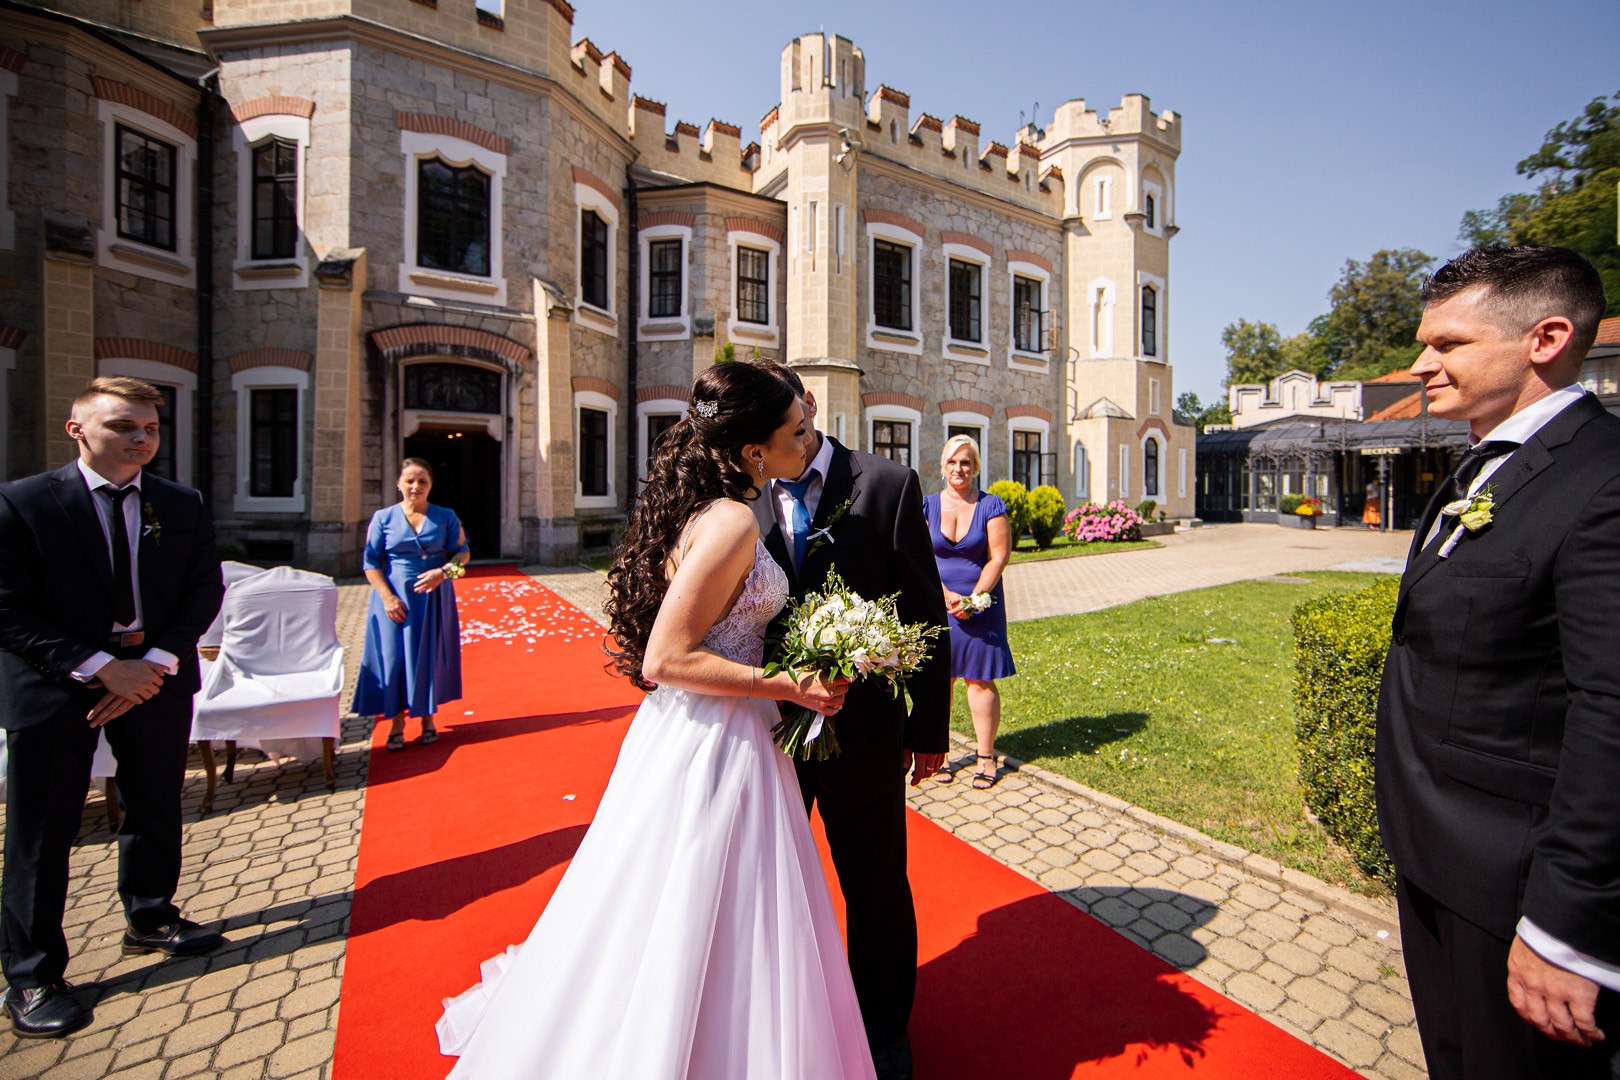 Picturesque dream wedding of Kloudy & Michal in Hluboká nad Vltavou. - 0142.jpg